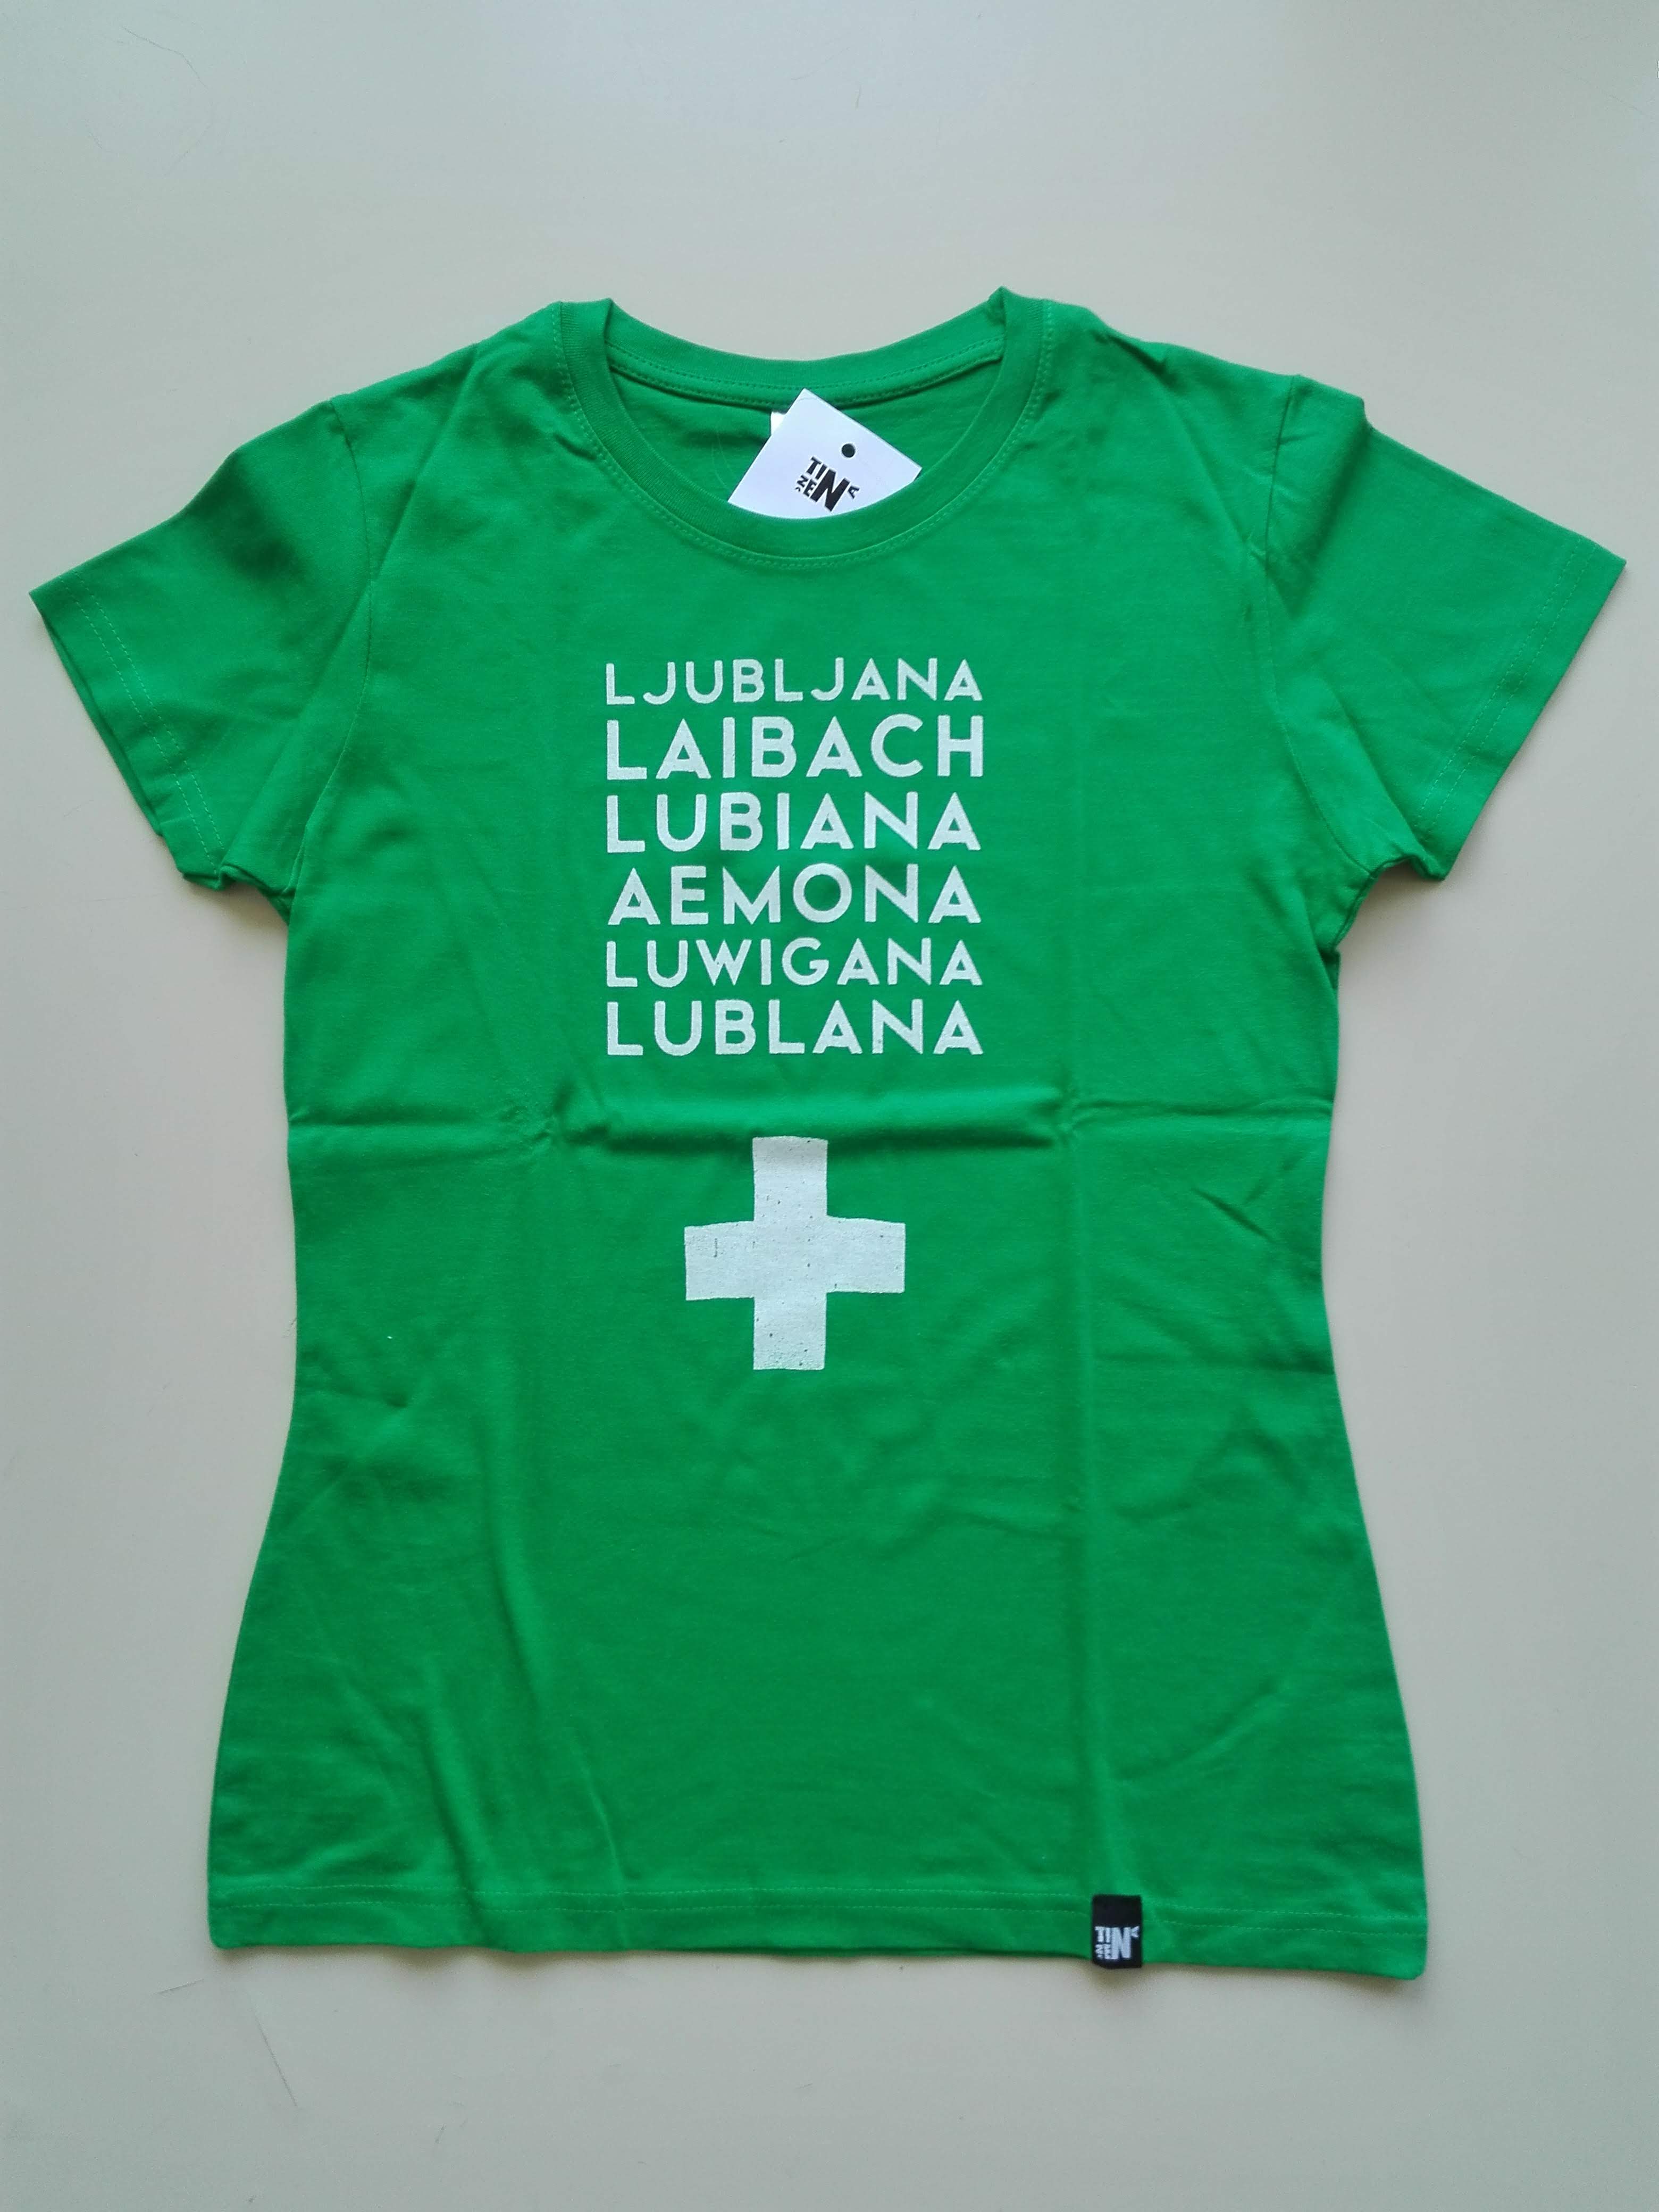 ženska zelena majica Ljubljana